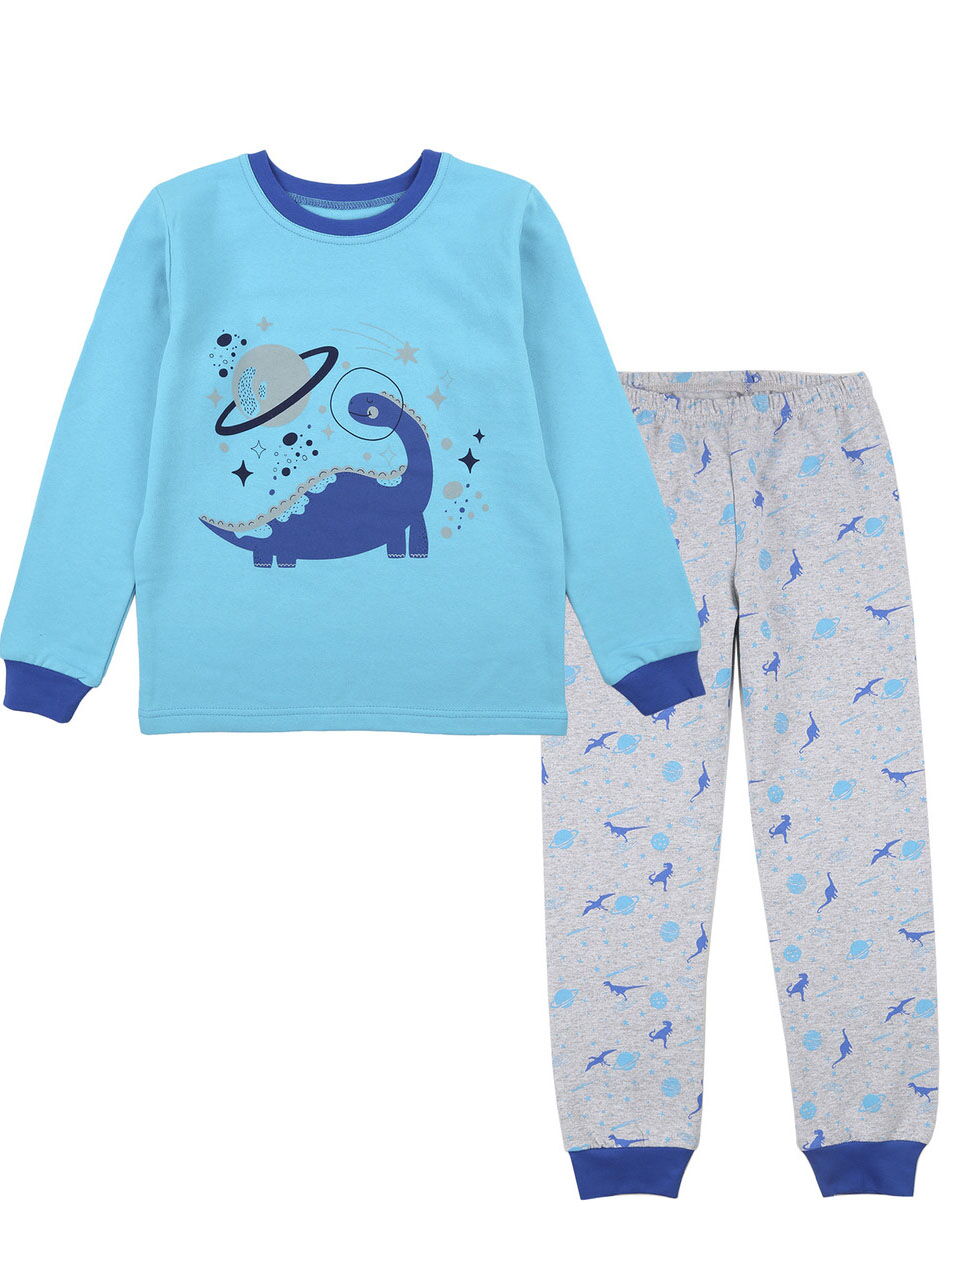 Утепленная пижама для мальчика Фламинго динозавр в космосе бирюзовая 329-053 - цена